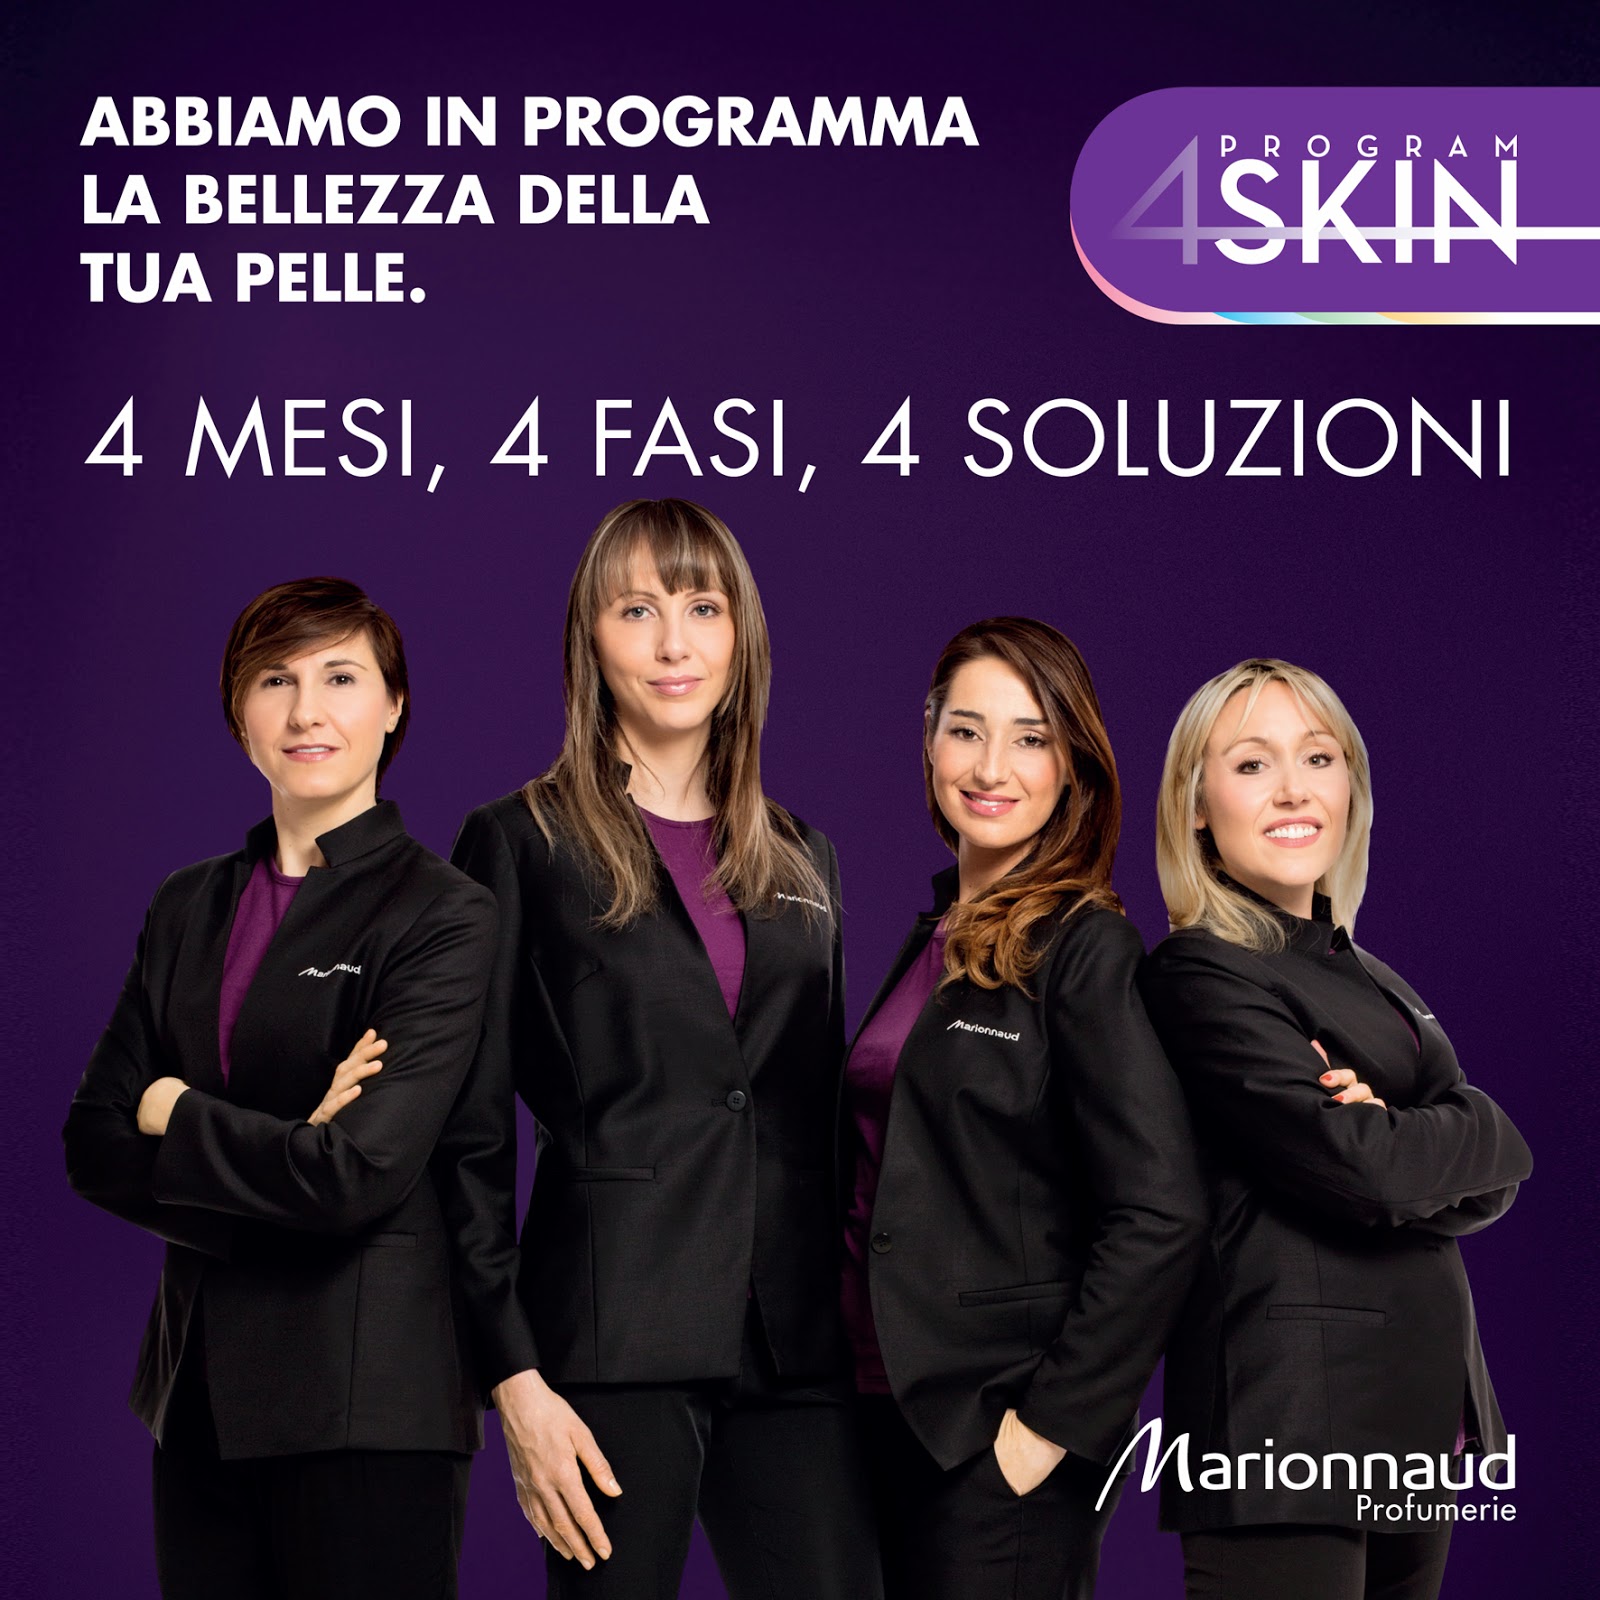 Marionnaud 4Skin Program  : la terza fase dedicata al viso